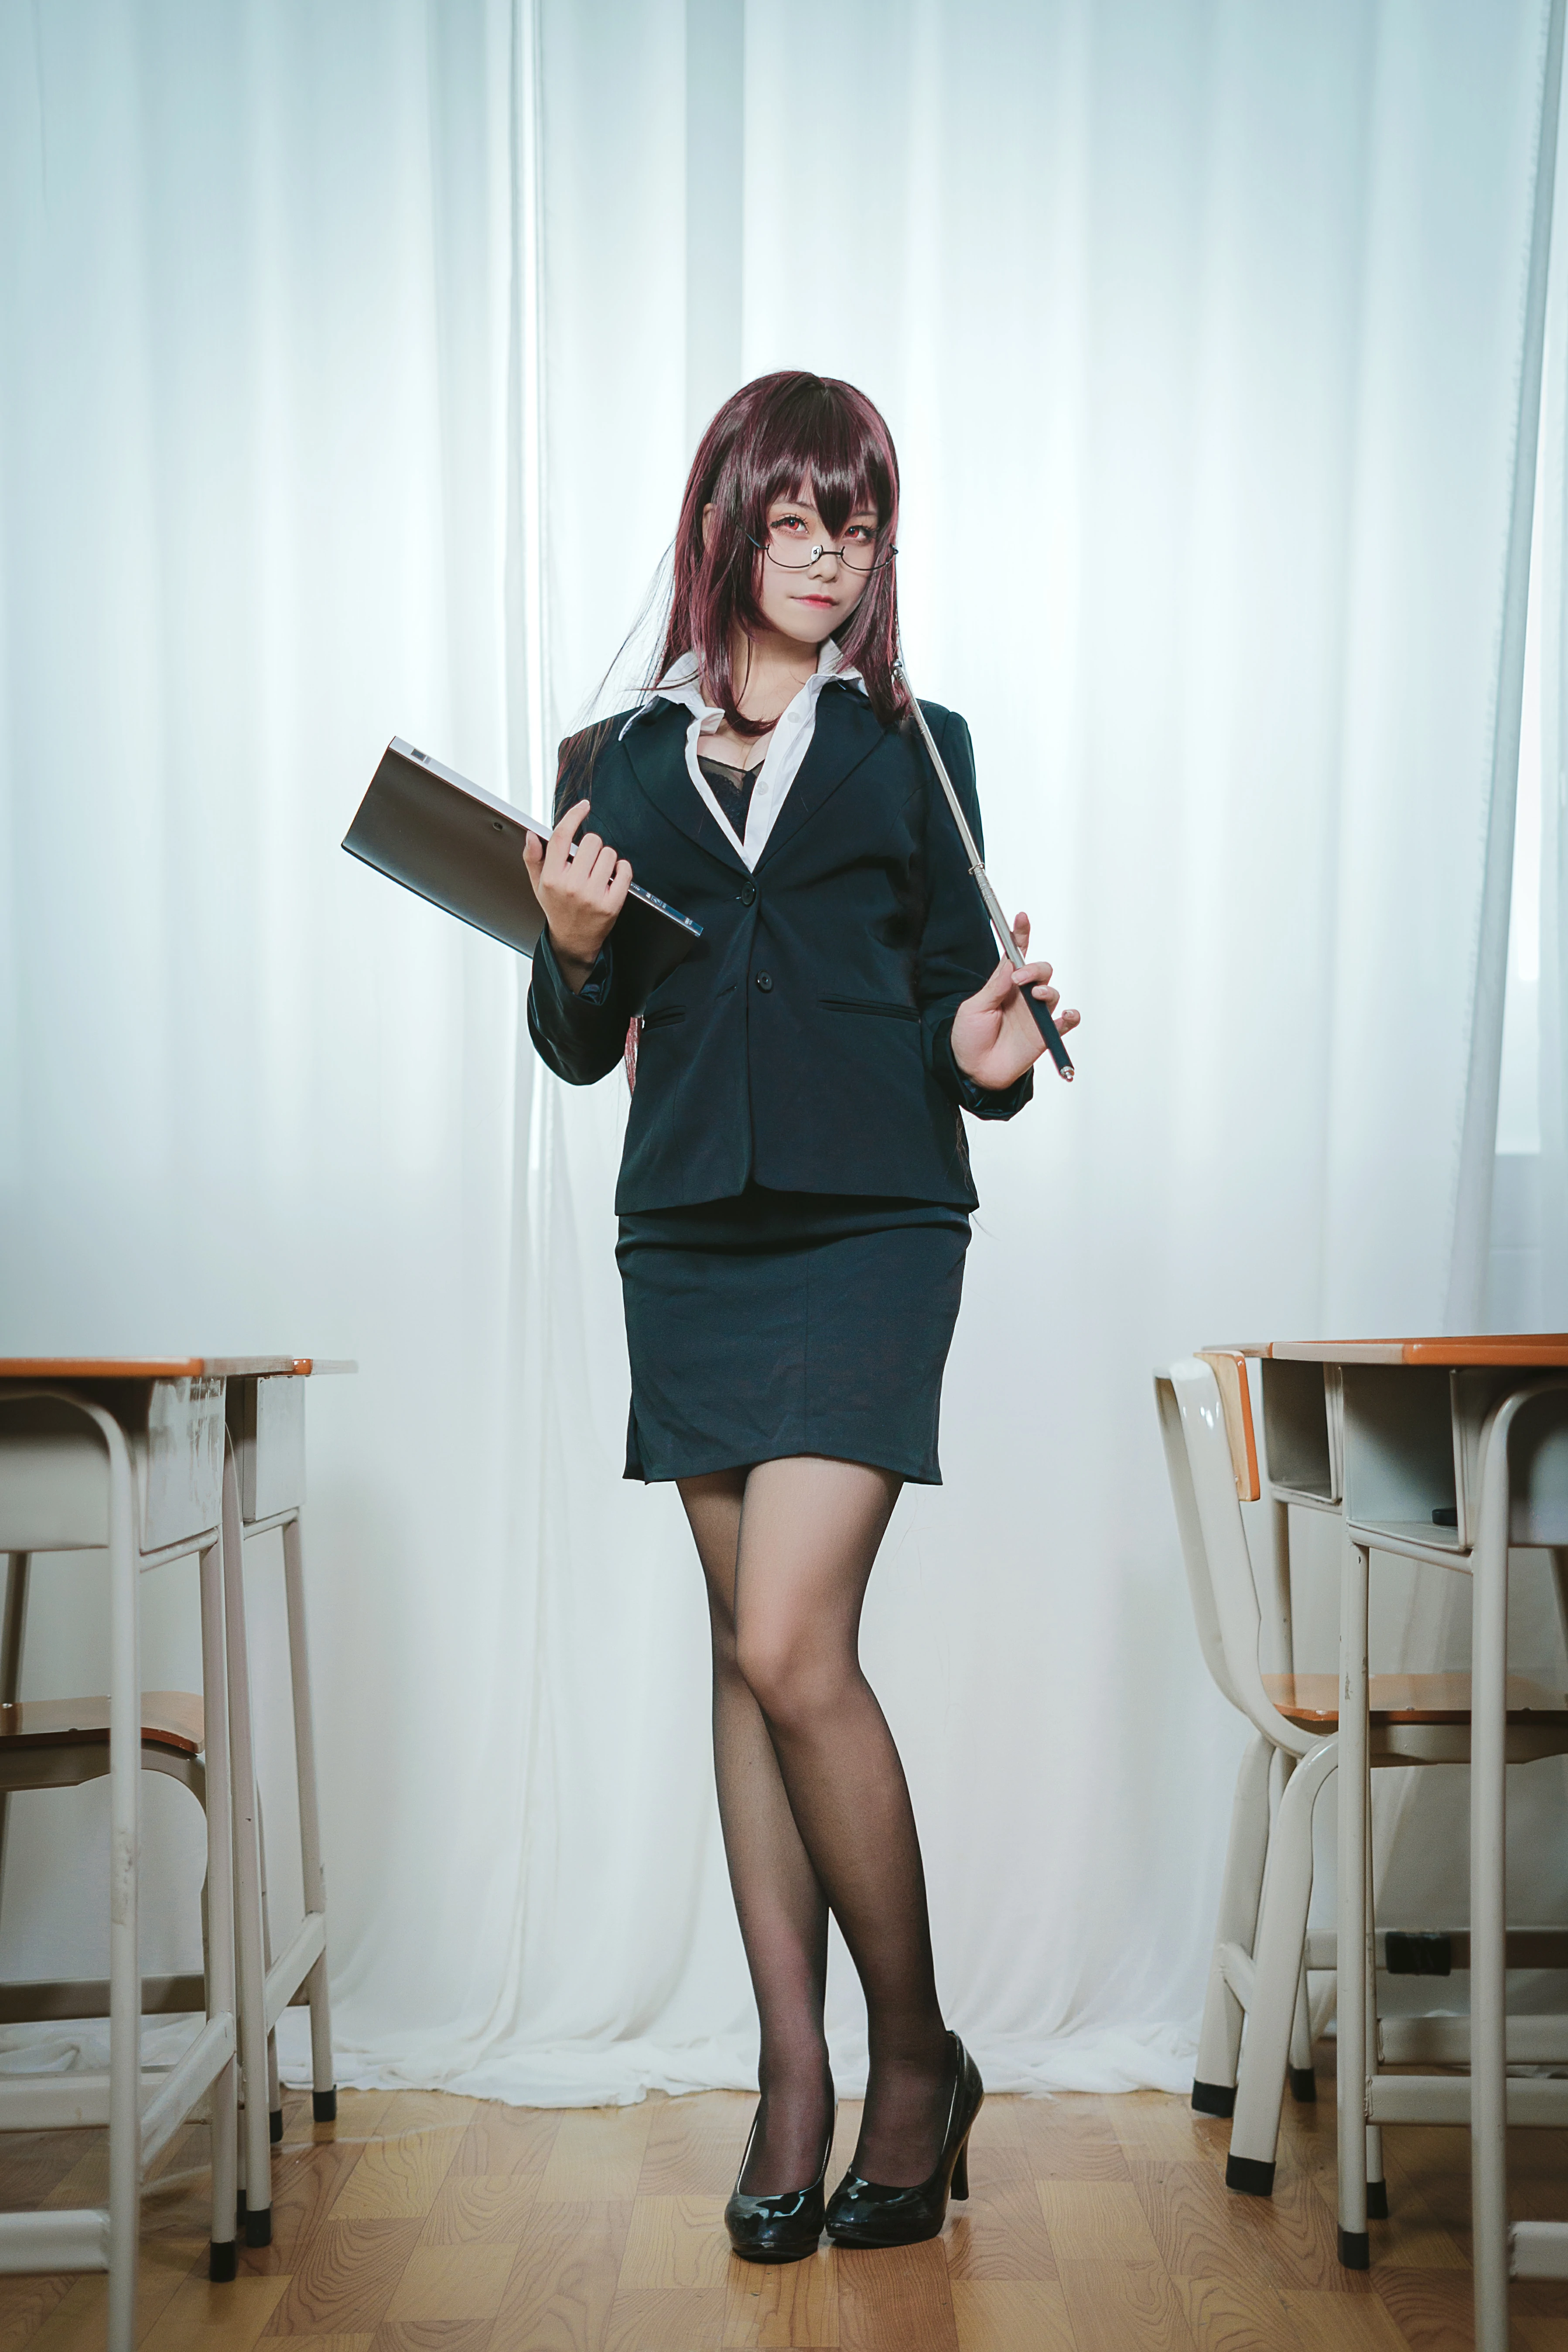 丰满萝莉女老师 蜜汁猫裘 黑色OL制服与短裙加黑丝美腿性感写真,